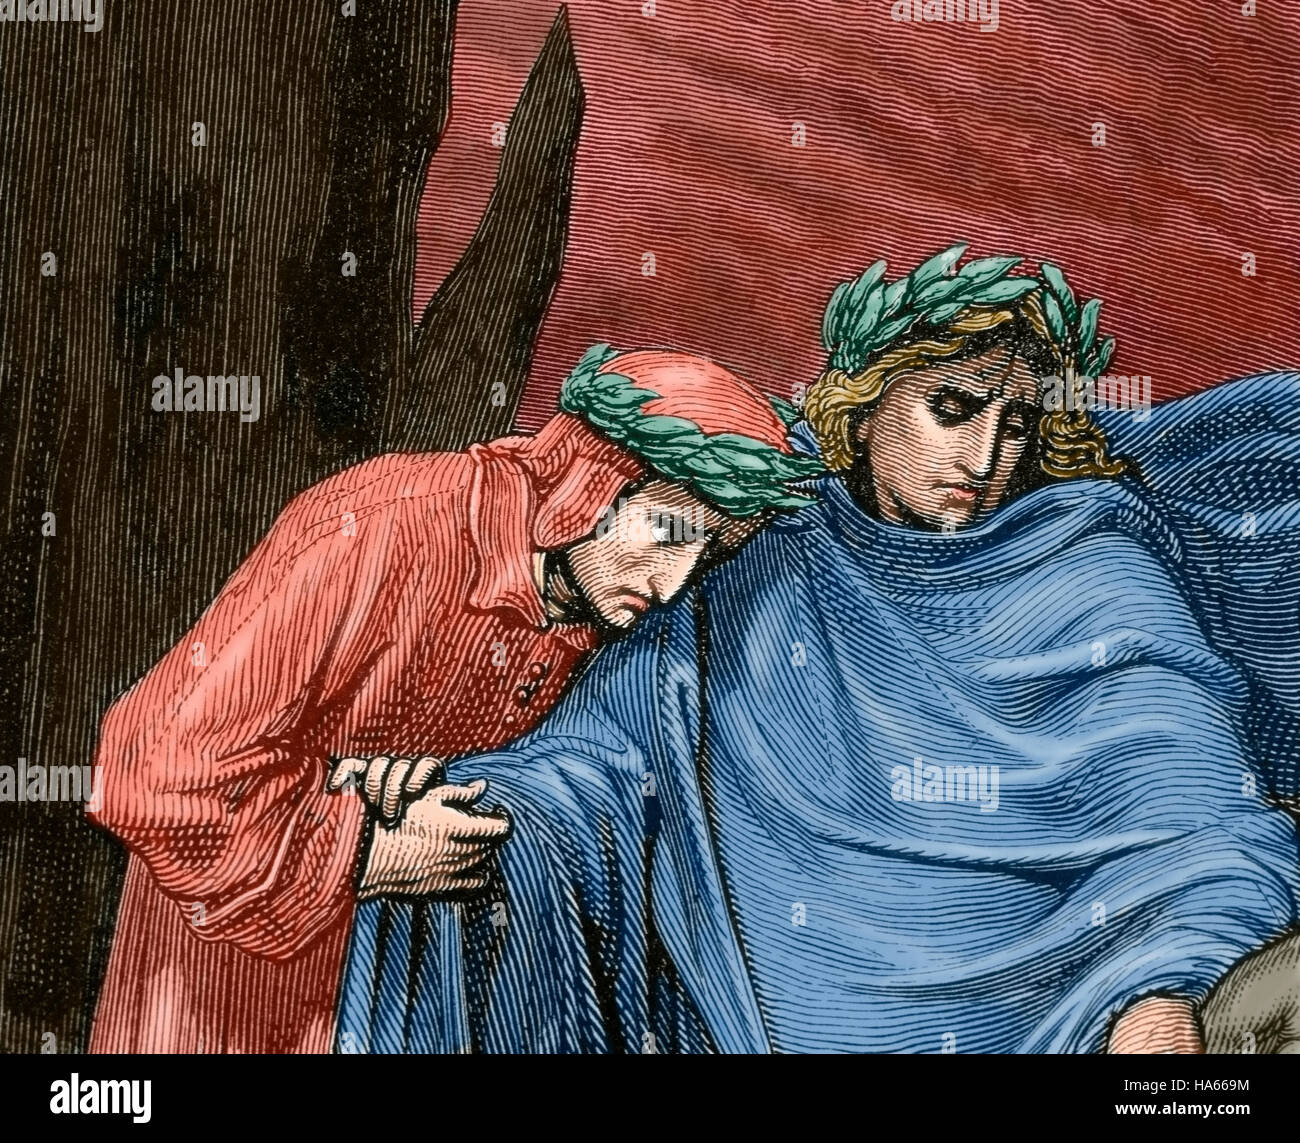 Göttliche Komödie. Episches Gedicht von Dante Alighieri zwischen 1308 und seinem Tod im Jahre 1321.  Reise von Dante durch die Hölle, geleitet von den römischen Dichter Vergil.  Stich von Gustave Dore. Farbige. Stockfoto